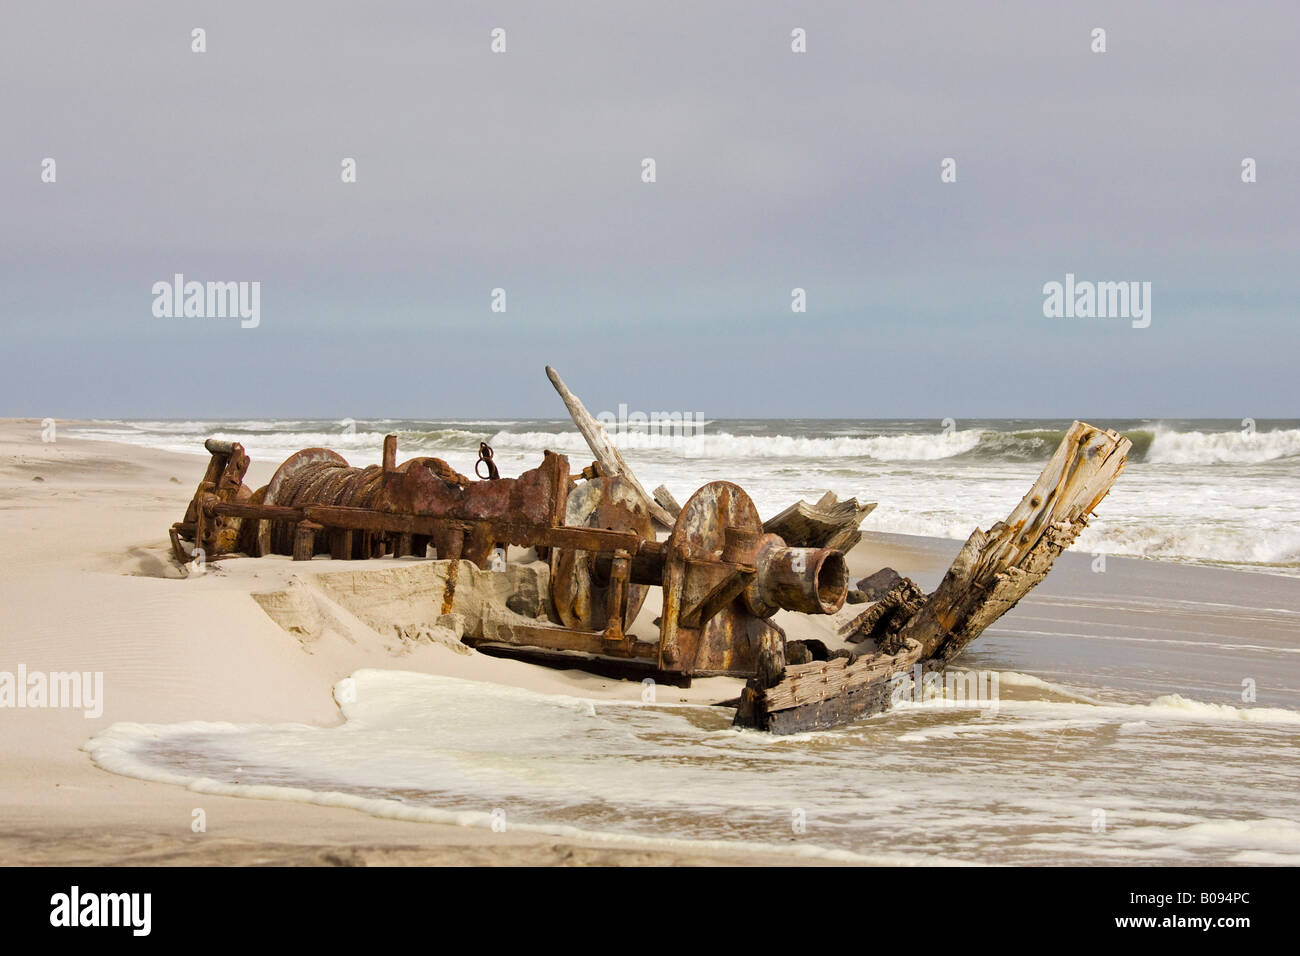 Parts from the Winston shipwreck swept up on the Atlantic coast, Skeleton Coast, Namib Desert, Namibia, Africa Stock Photo